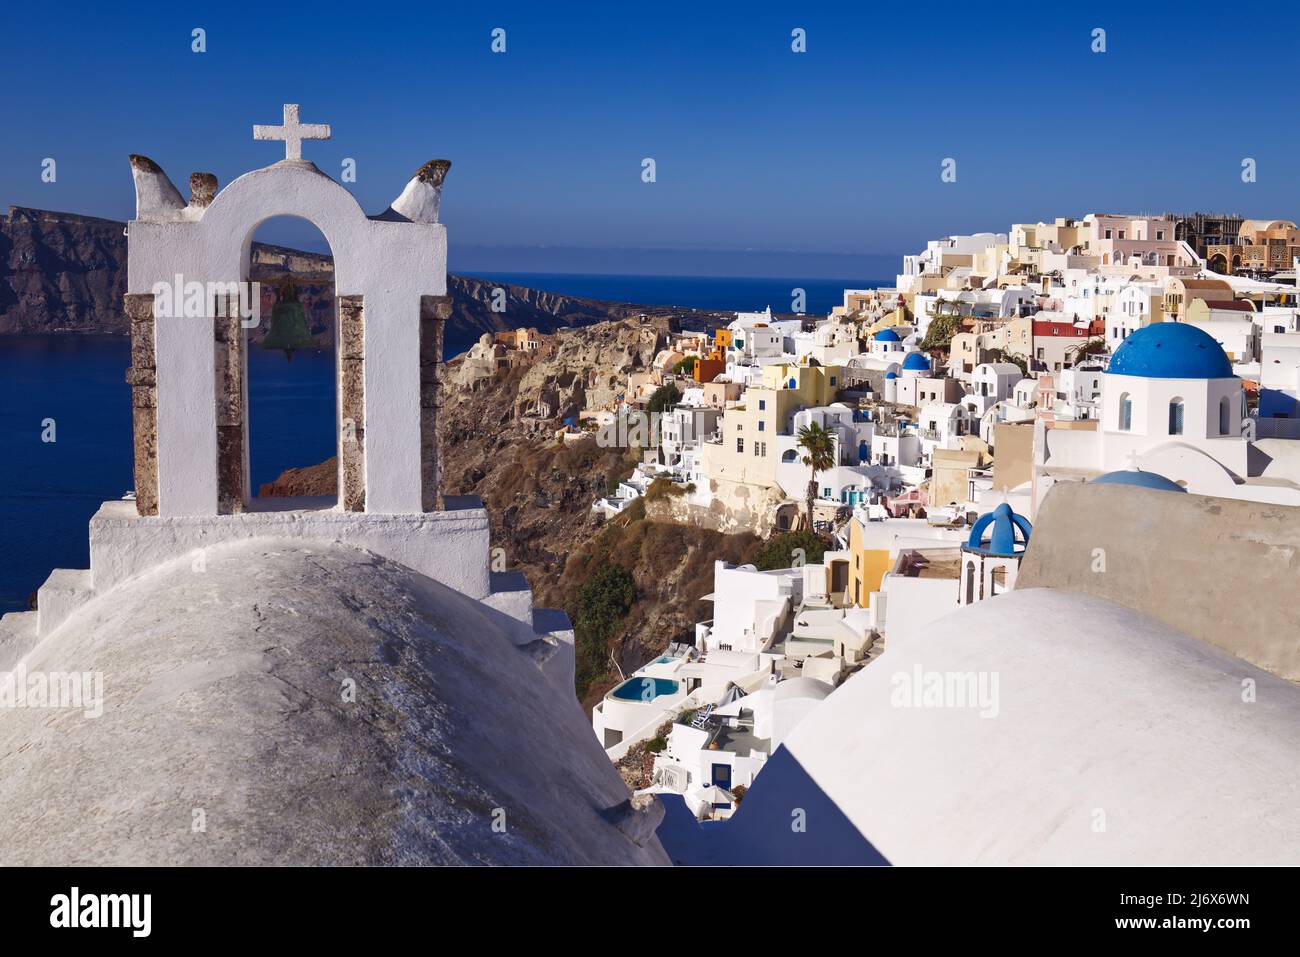 Oia, Santorini, Iles grecques, Grèce - clocher, églises avec dômes bleus, maisons, magasins et autres bâtiments blancs sur la falaise sous un soleil éblouissant Banque D'Images